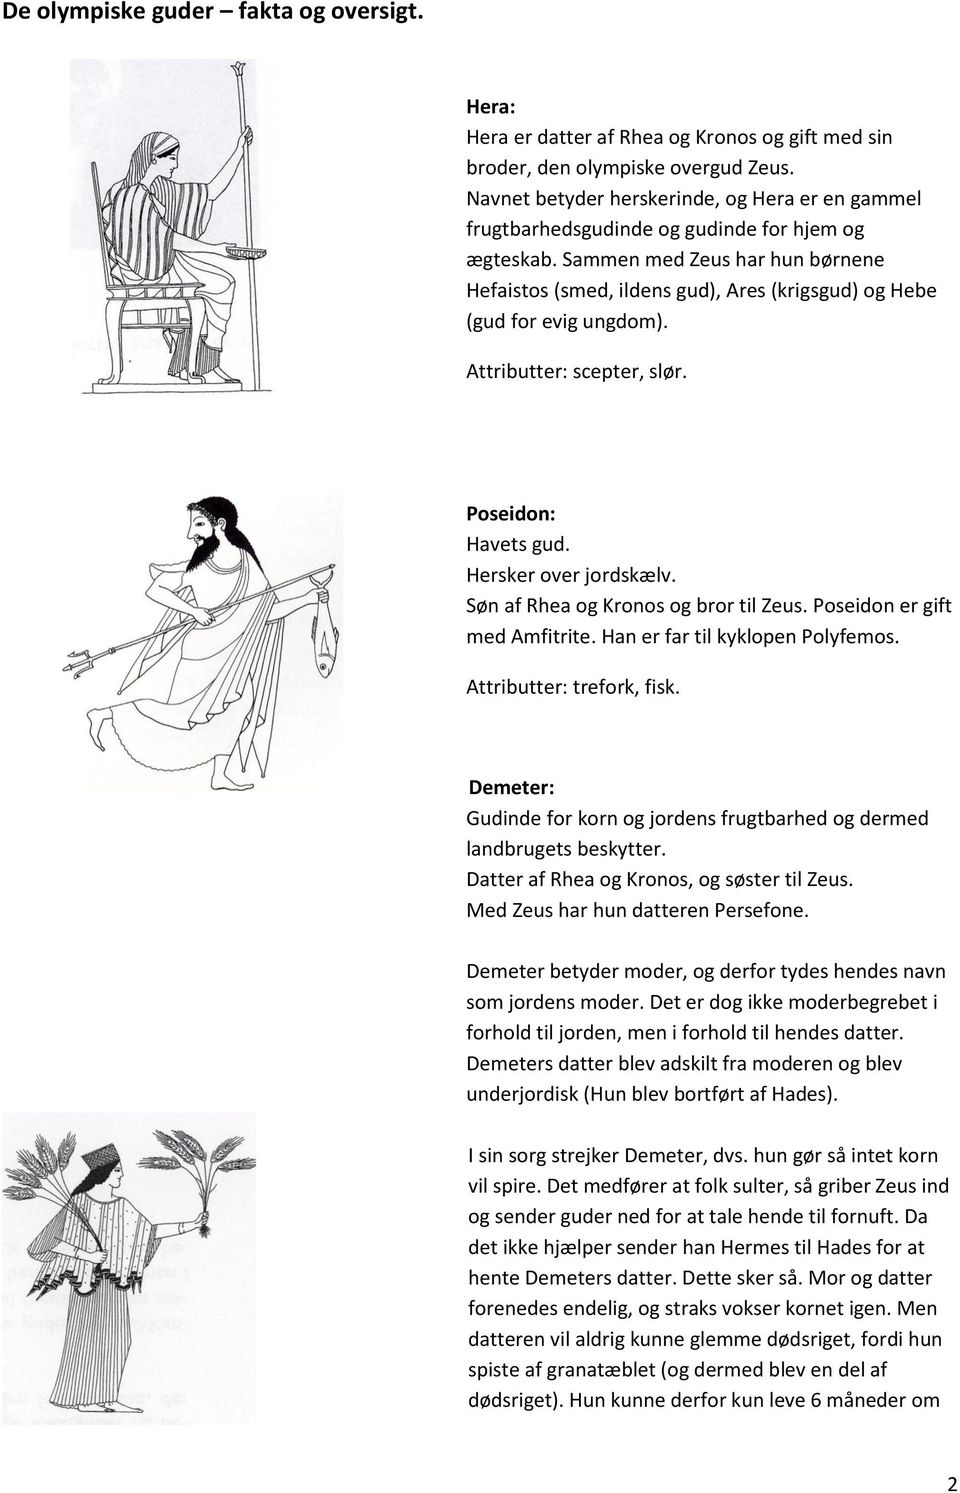 De olympiske guder fakta og oversigt. - PDF Gratis download